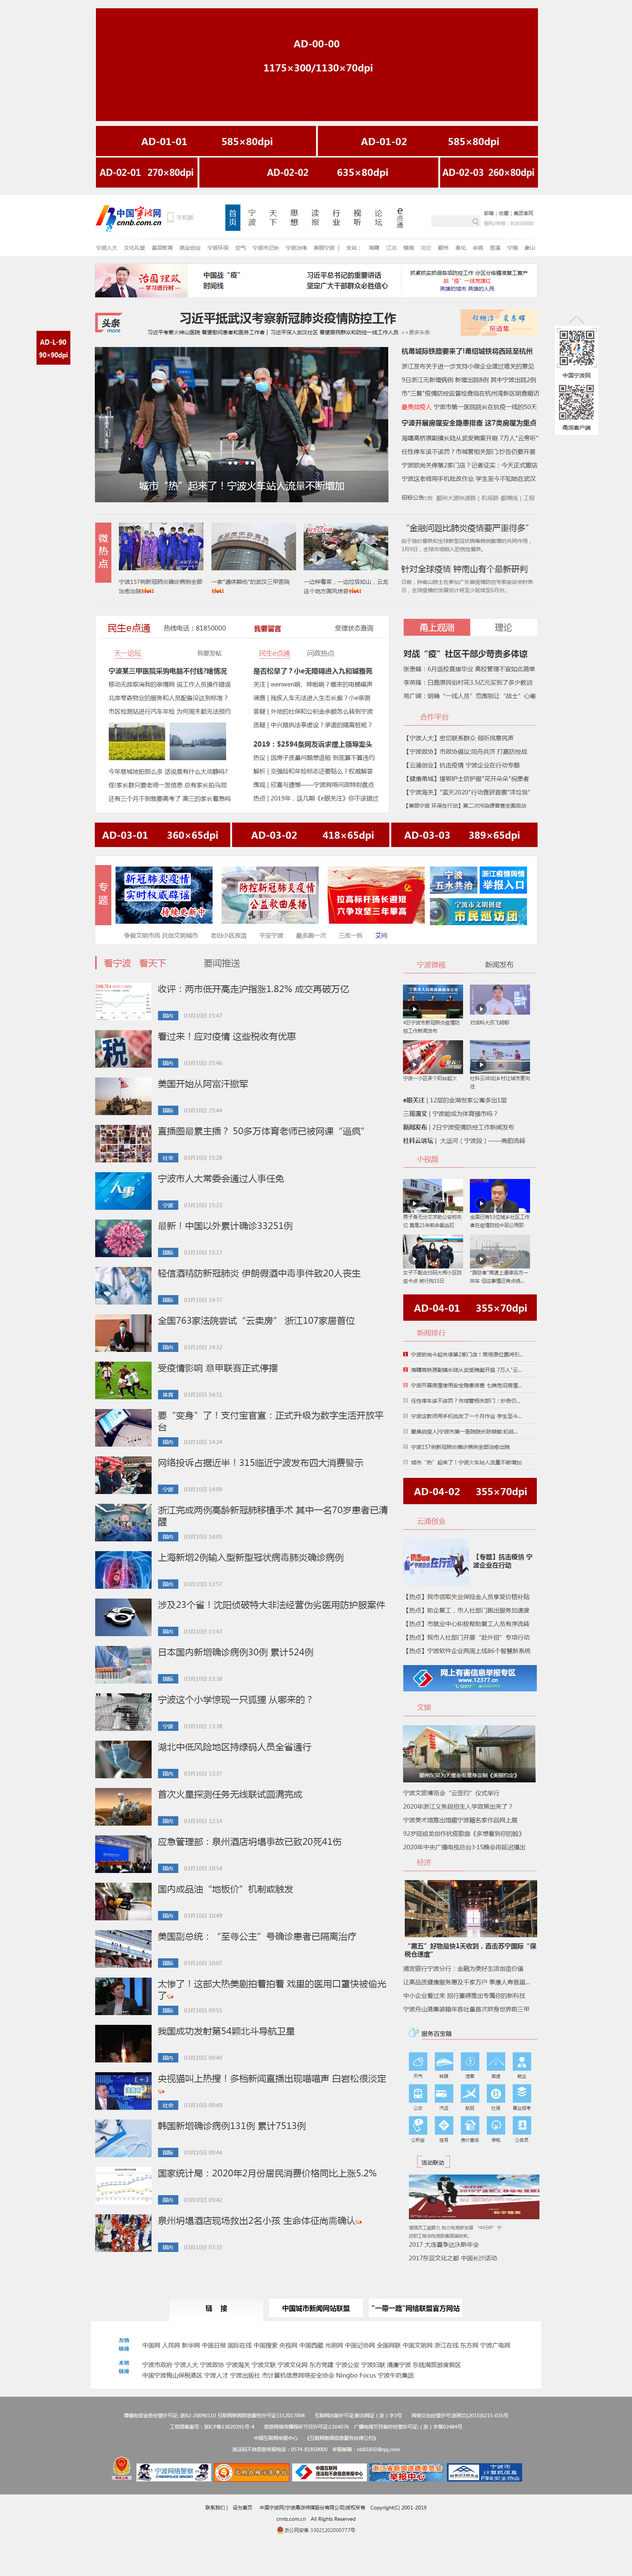 2020年中国宁波首页广告收费标准-示意图